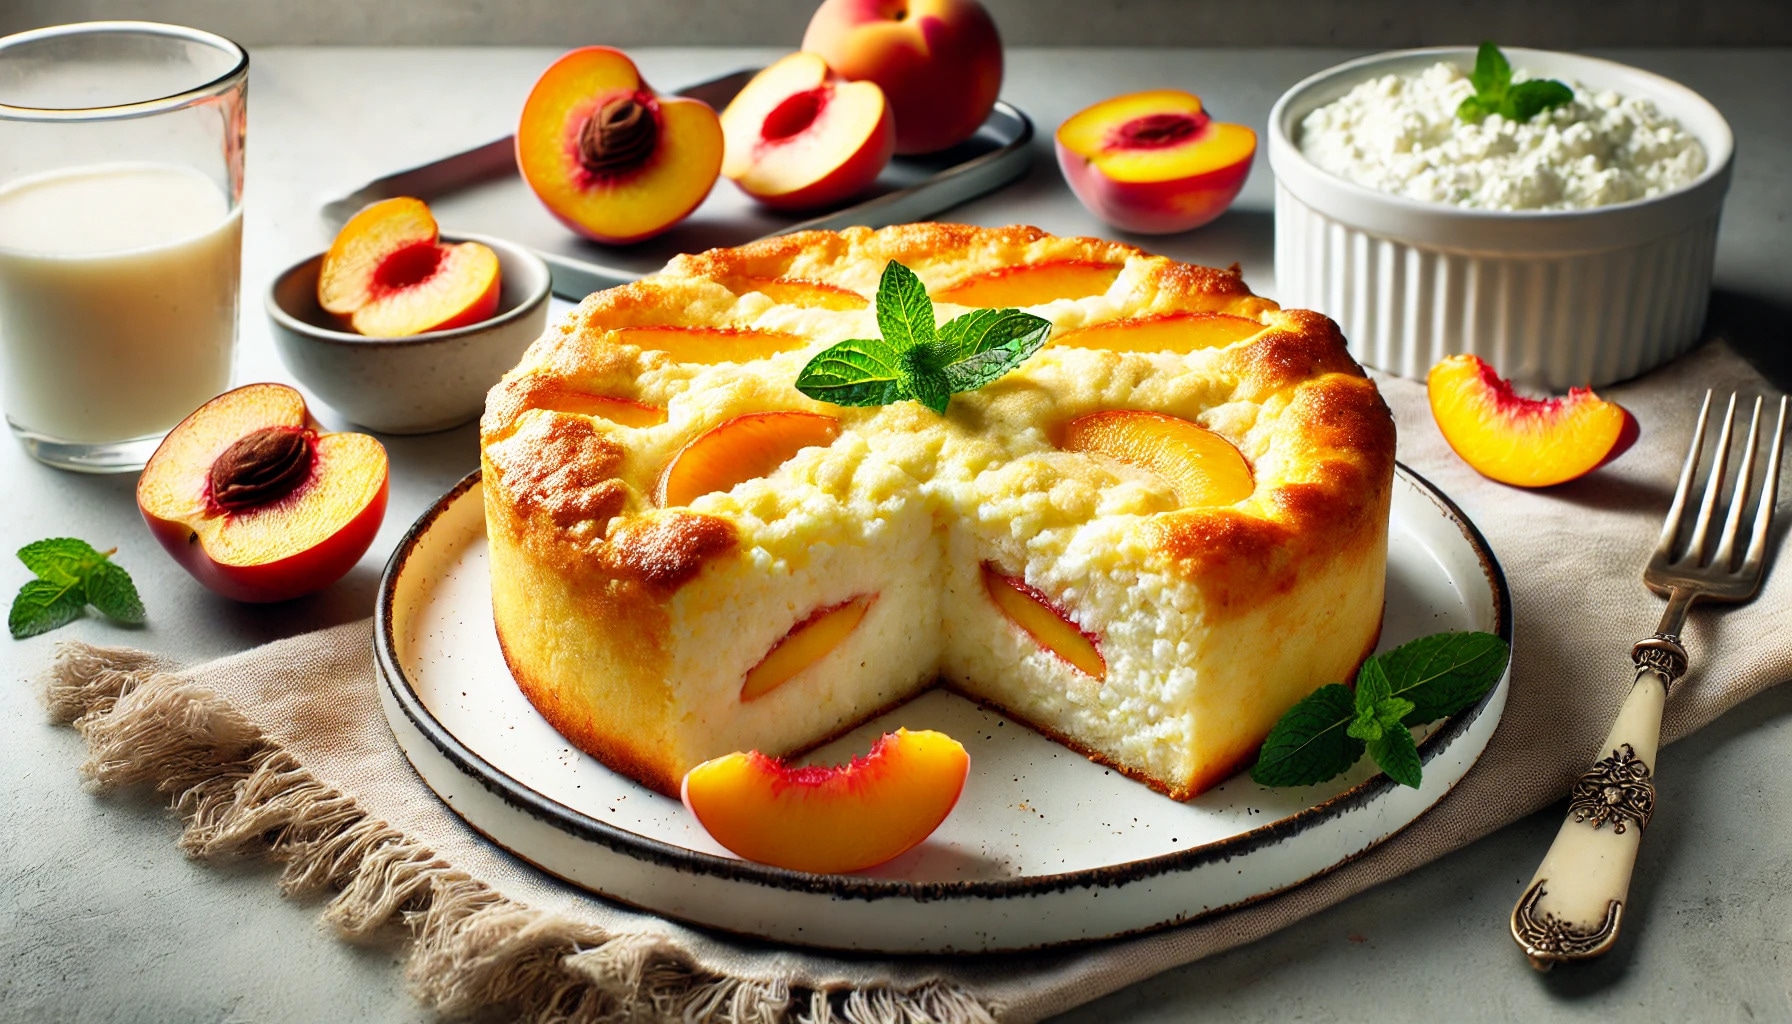 Вкусная радость к завтраку и полднику: воздушная и ароматная запеканка из творога с персиками — простой рецепт аппетитного угощения